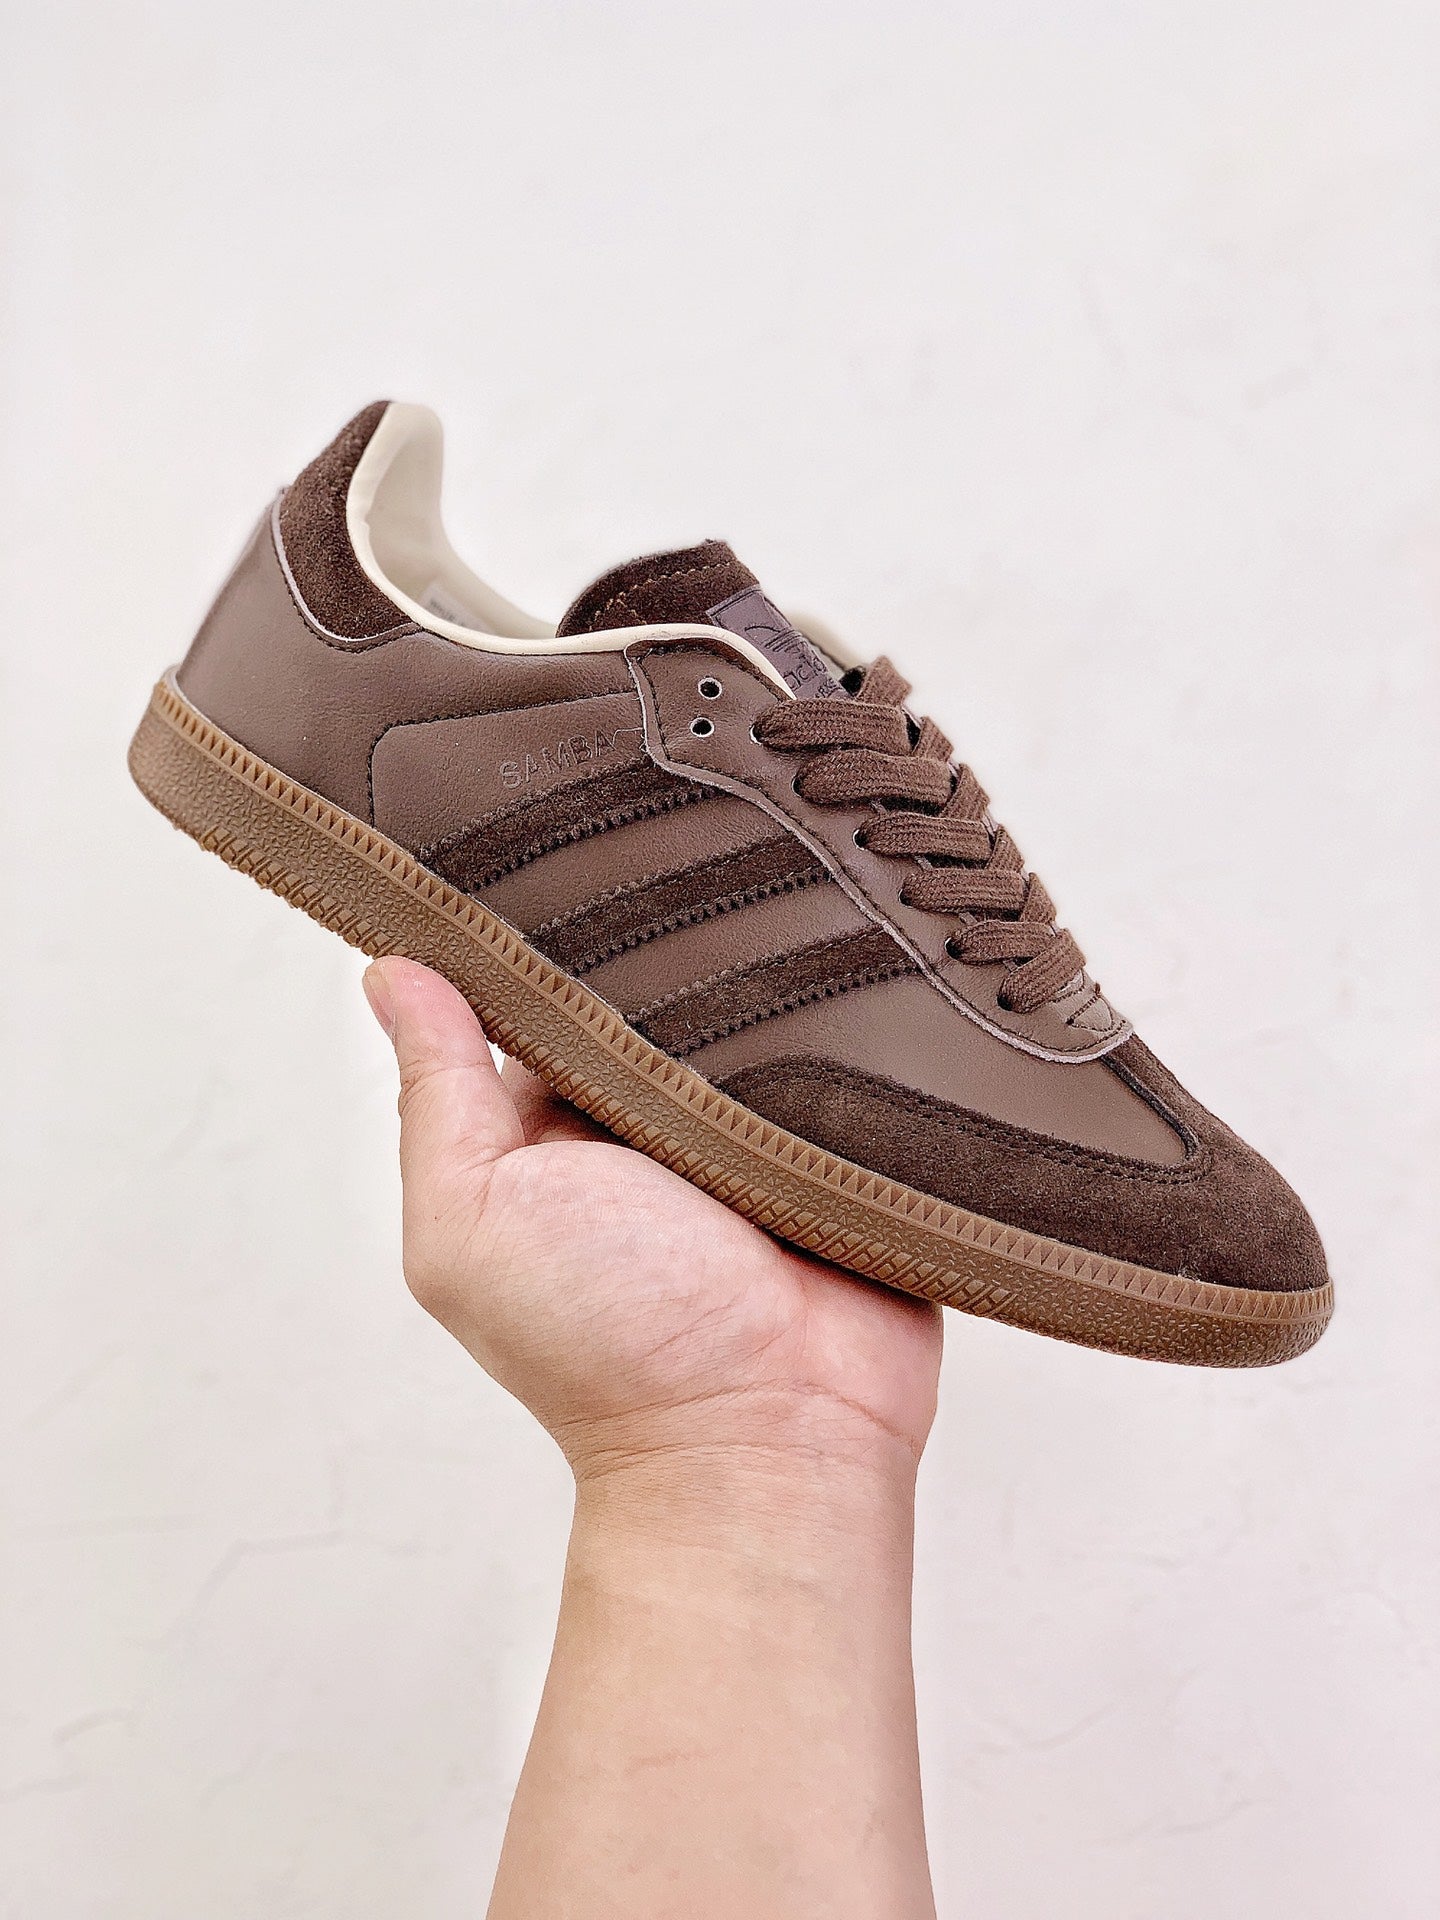 Adidas samba brown shoes